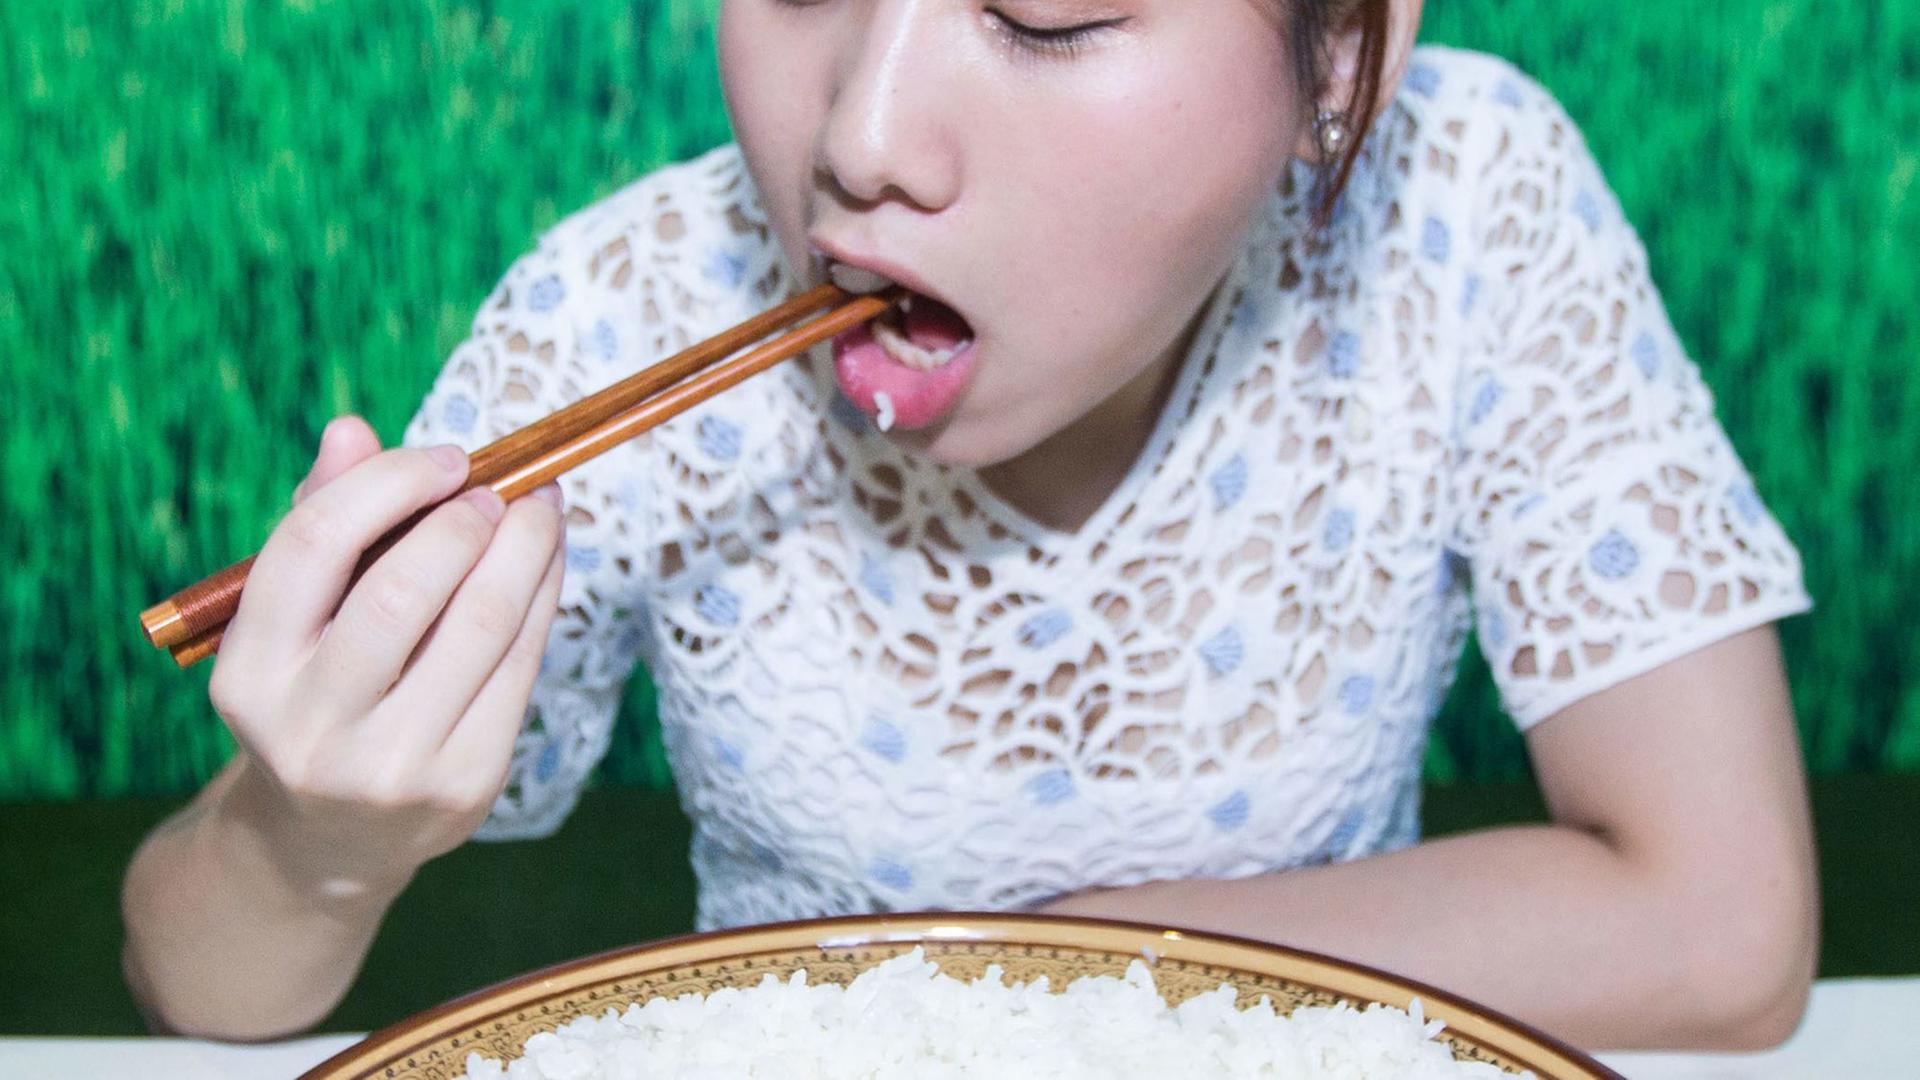 Eine junge Frau isst bei einem Wettbewerb in China Reis aus einer großen Schüssel.